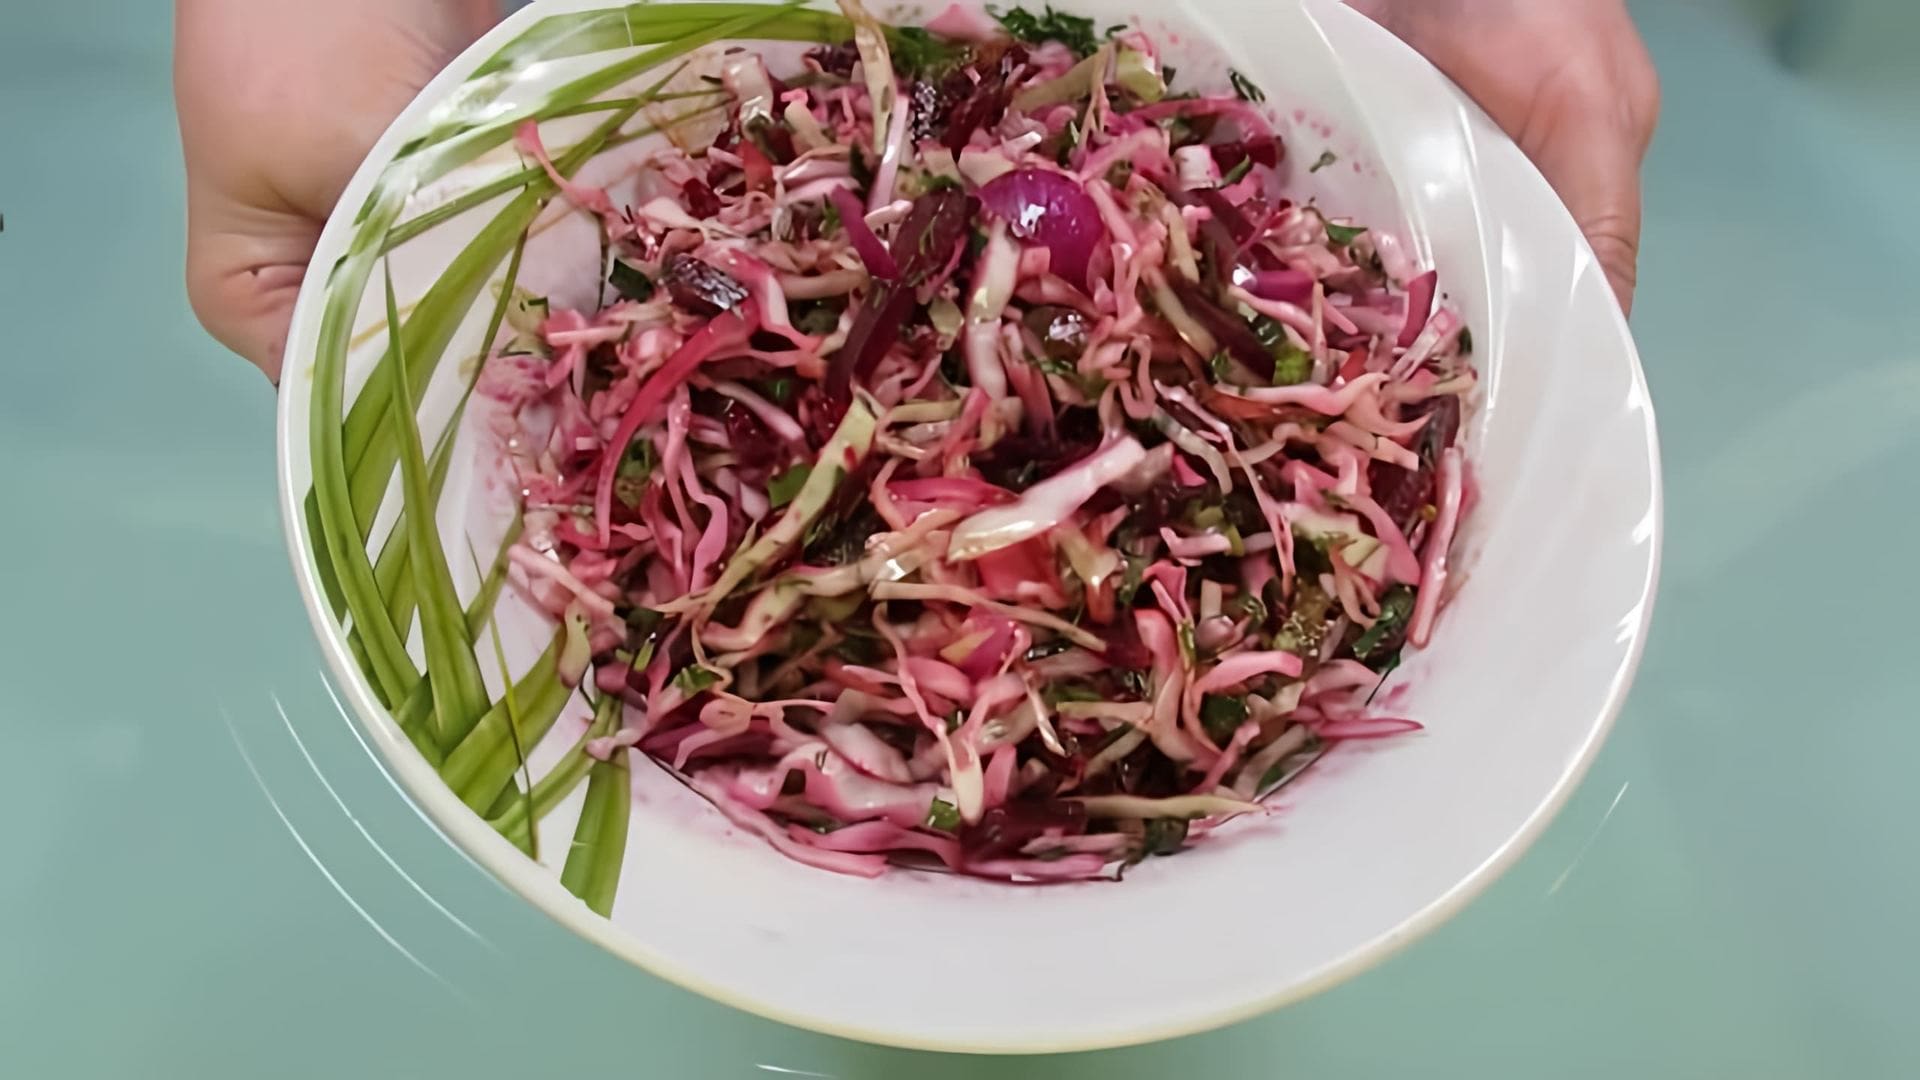 Салат из свеклы, капусты и огурцов - это вкусное и полезное блюдо, которое можно приготовить в домашних условиях